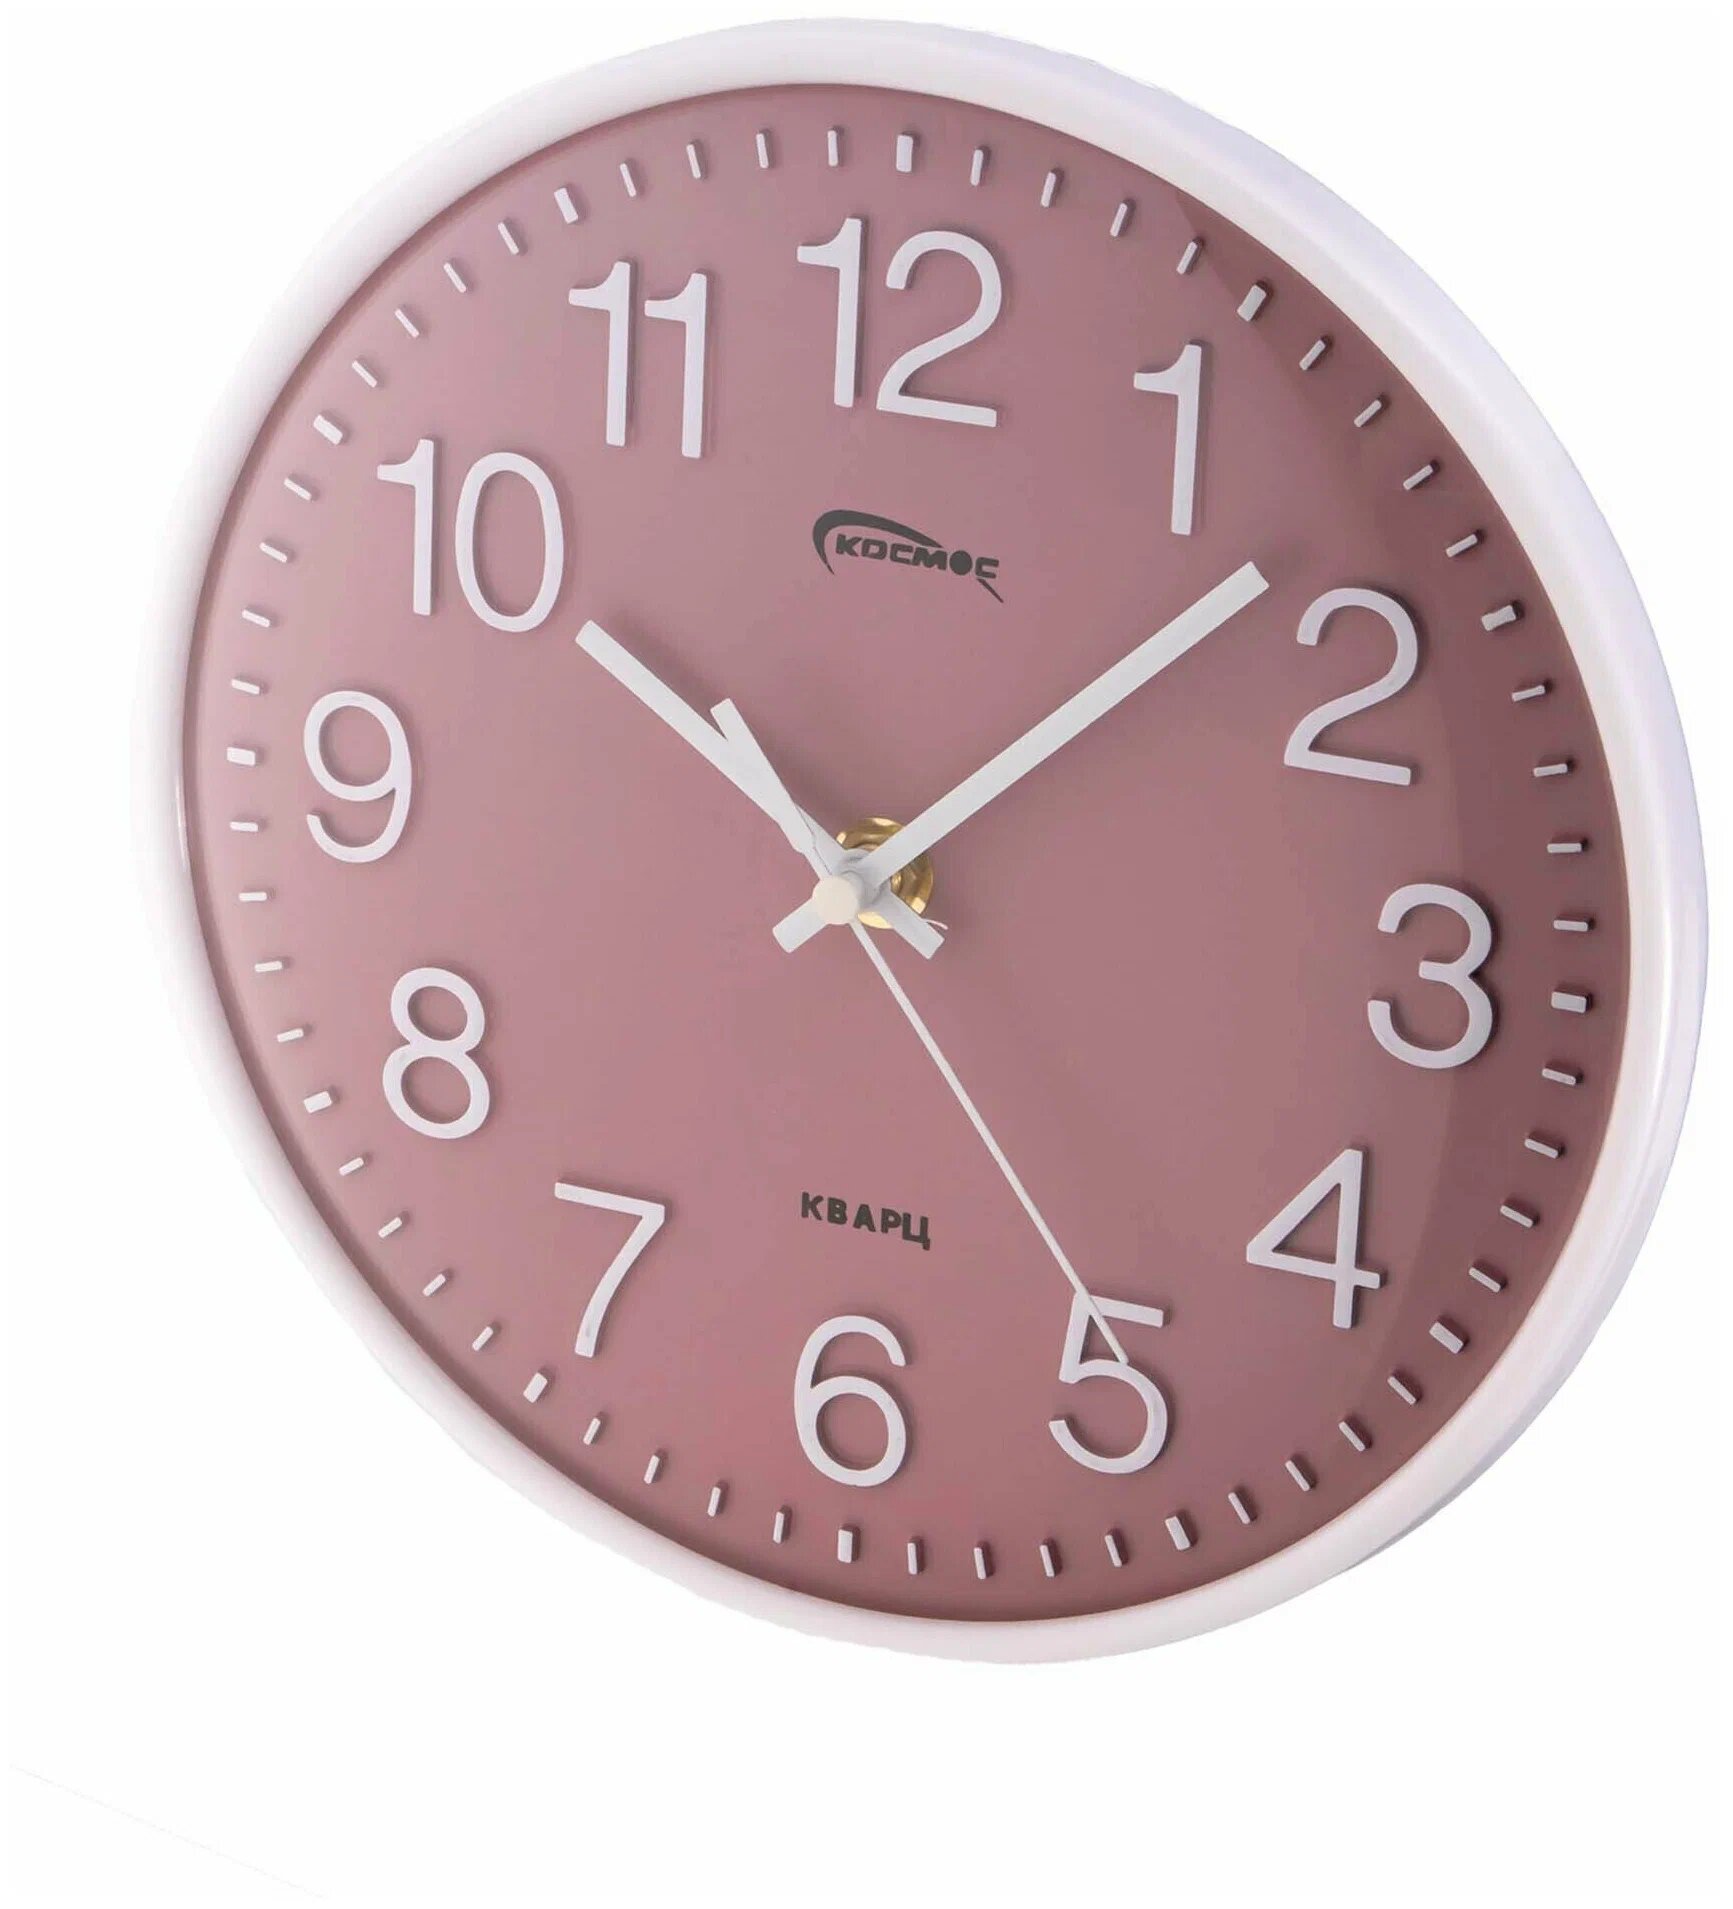 Часы настенные с плавным ходом на кухню / круглые часы 20 см / Космос / розовый часы / Батарейка в подарок